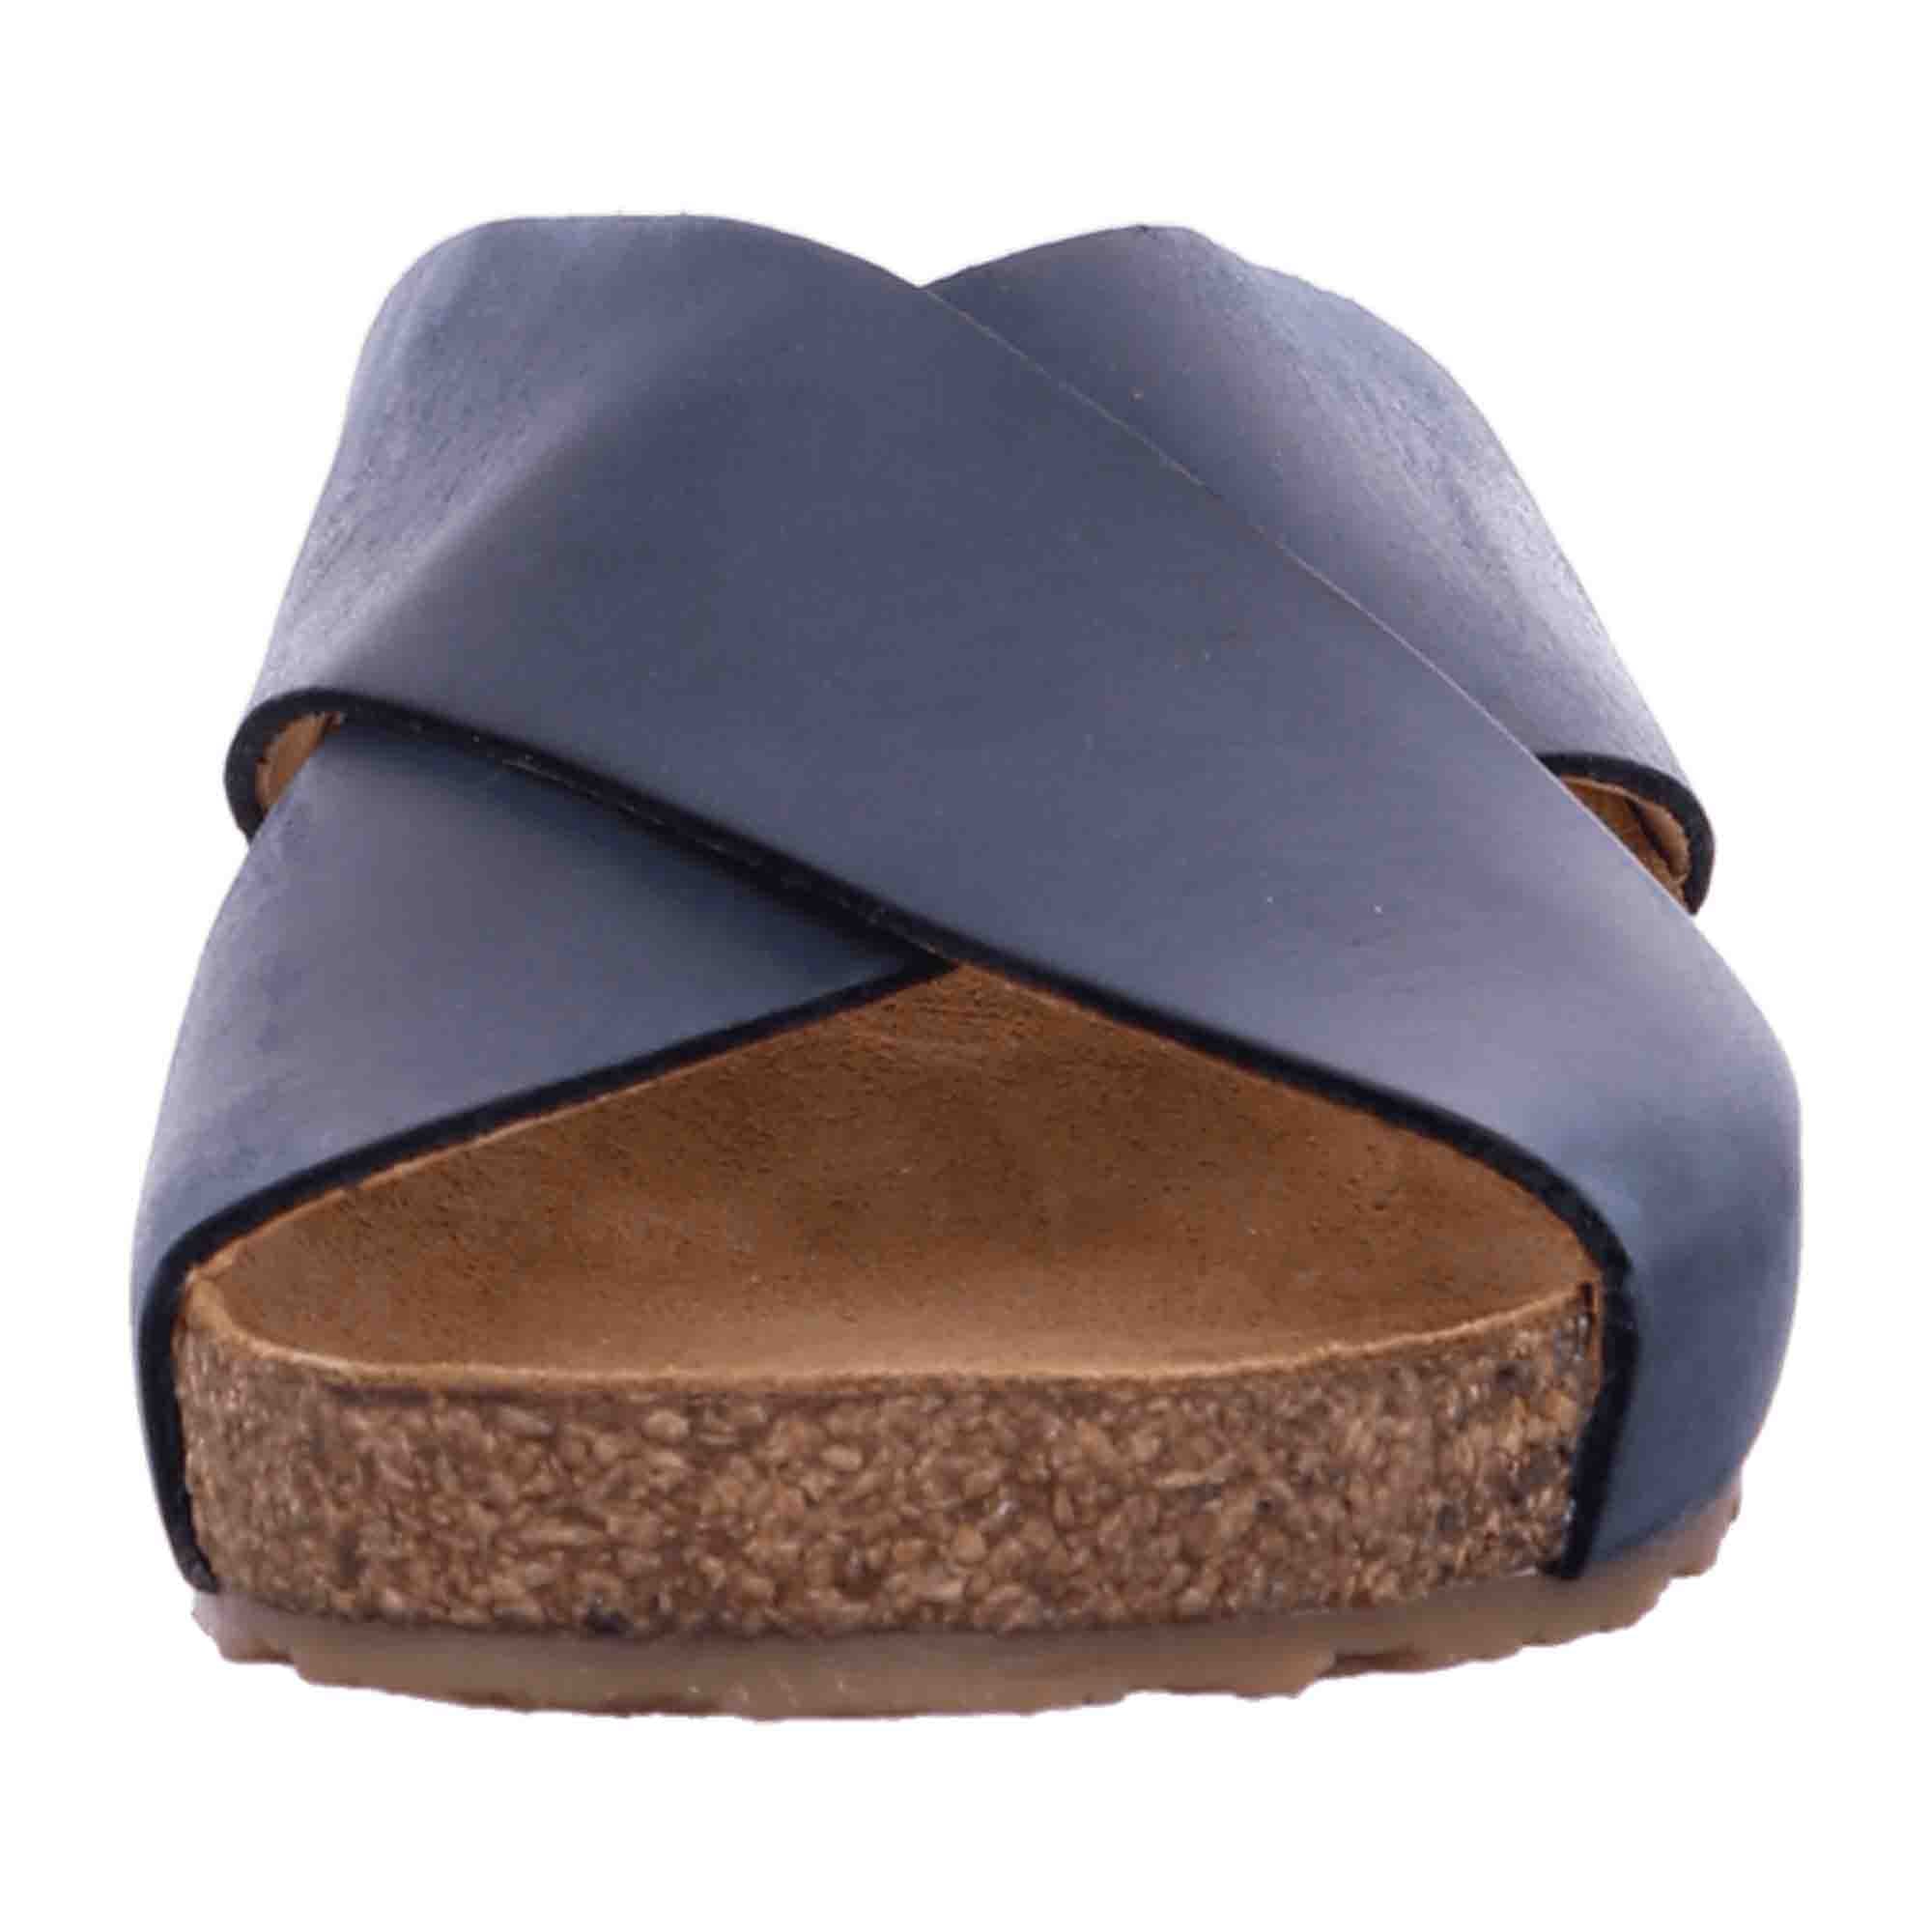 Haflinger Bio Mio Women's Sandals – Sustainable & Stylish Blue Leather